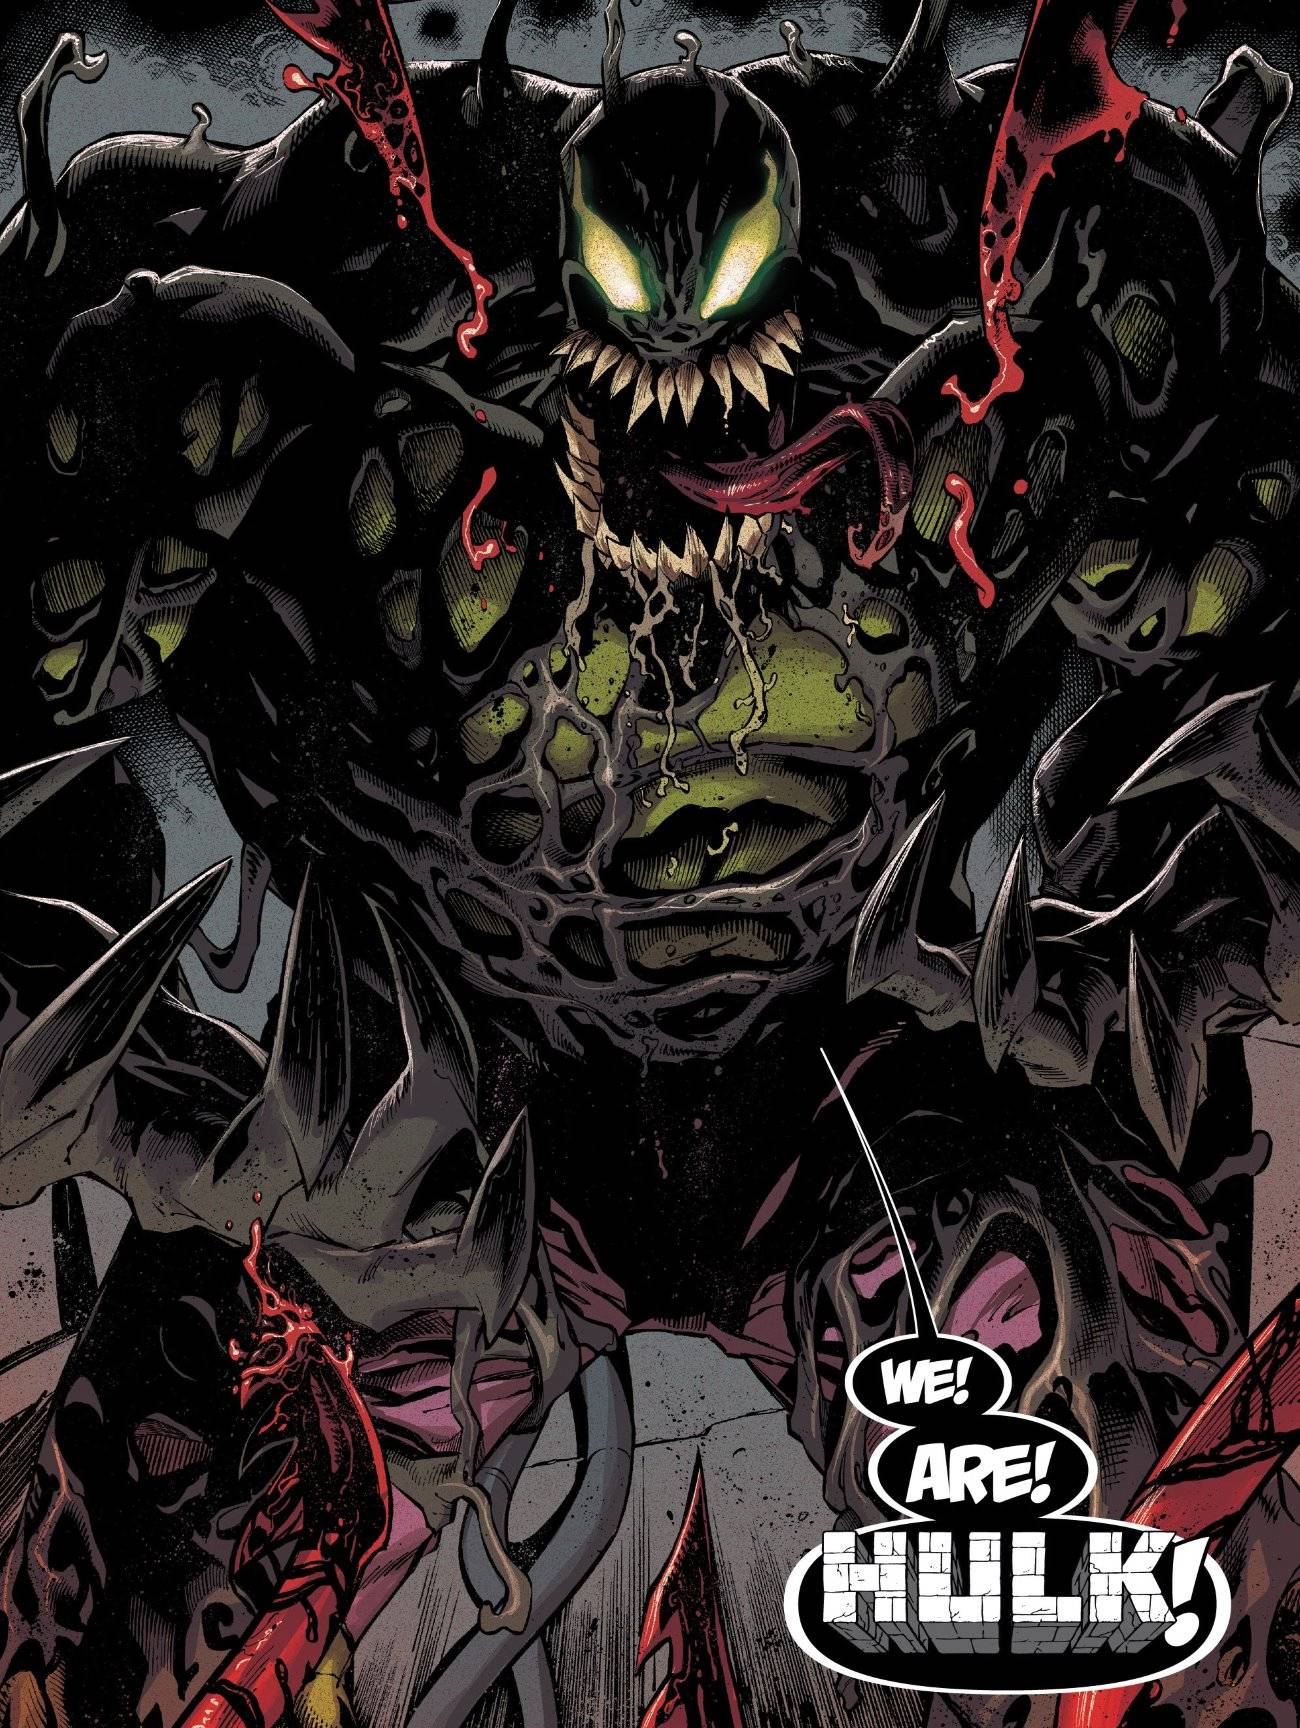  Bande Dessinée de Carnage Absolu de Venom Hulk